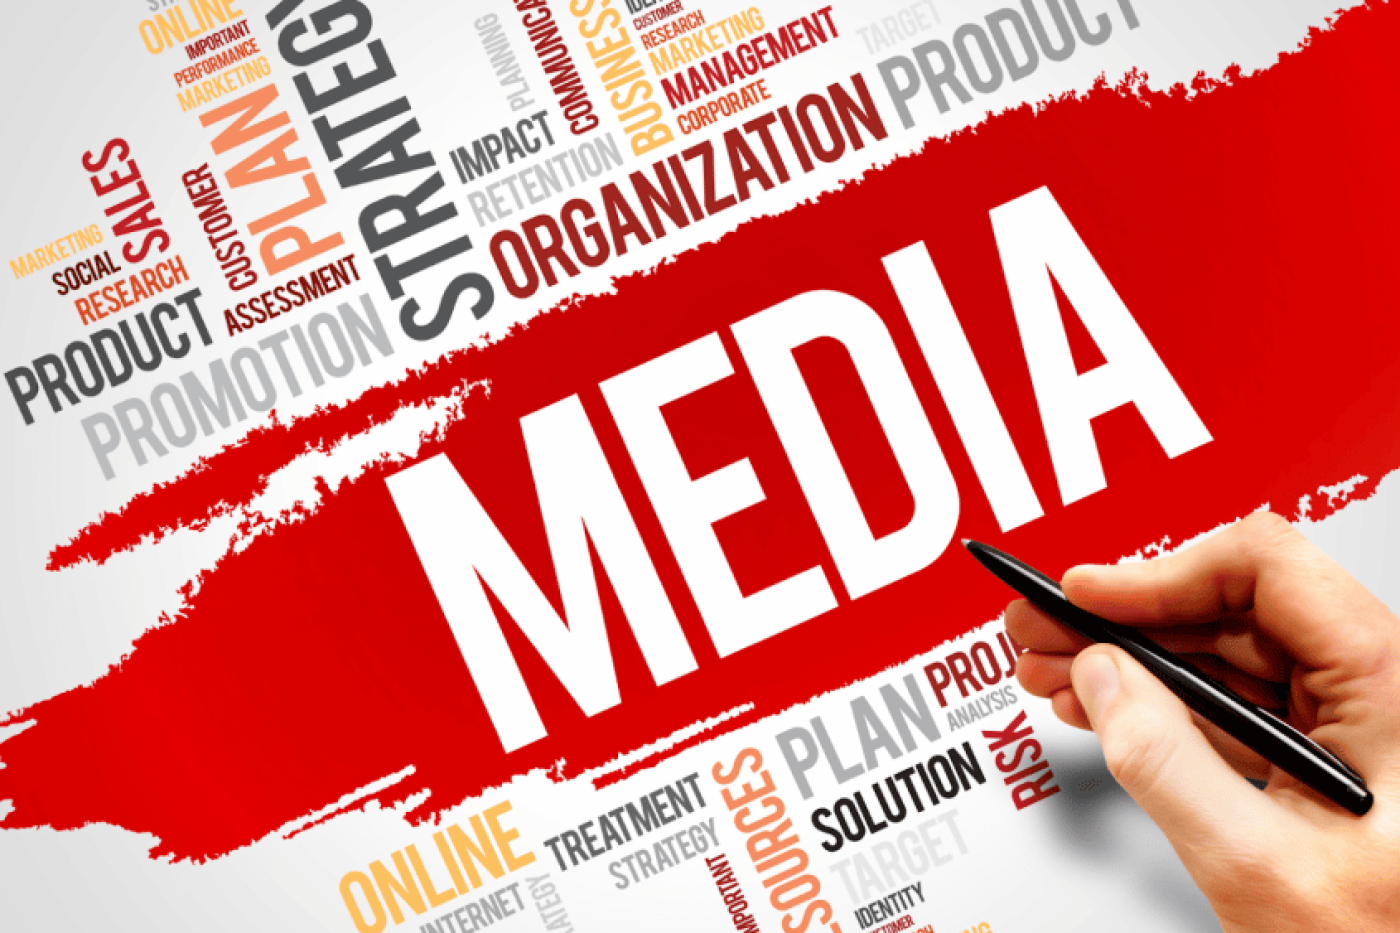 MEDIA: Social media management